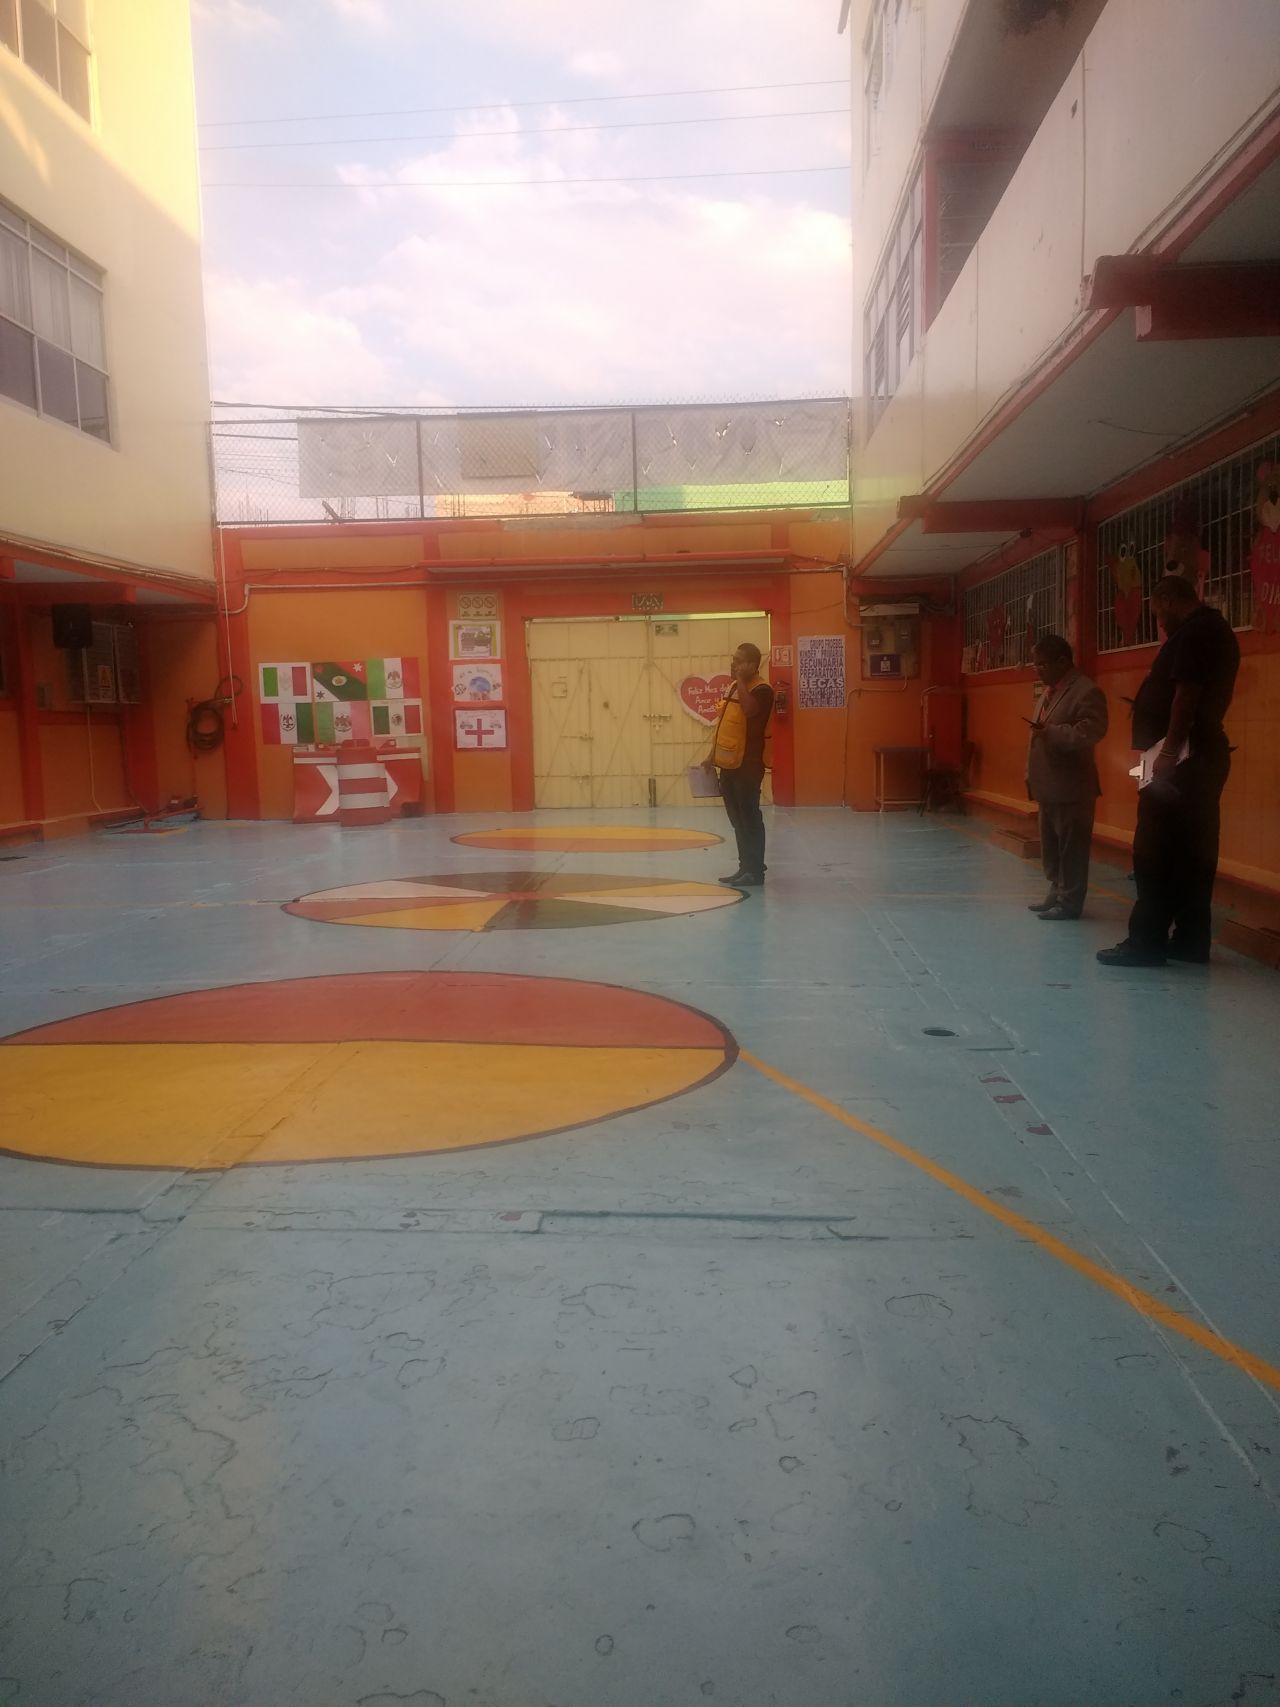 Escuelas en  Ciudad Nezahualcóyotl son revisadas por PC tras sismos  